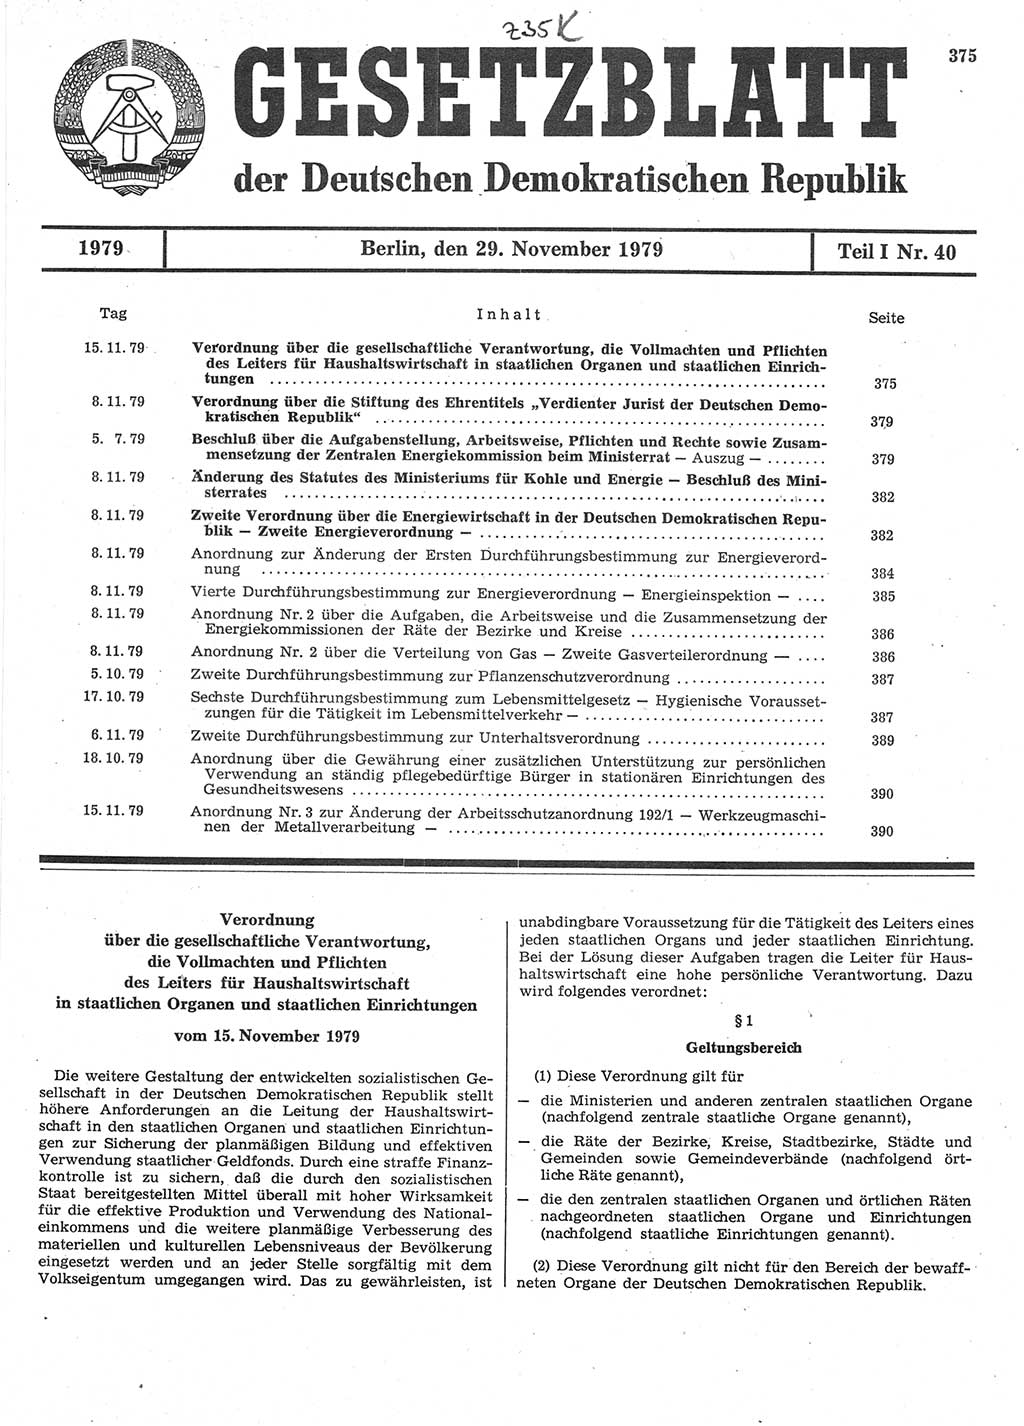 Gesetzblatt (GBl.) der Deutschen Demokratischen Republik (DDR) Teil Ⅰ 1979, Seite 375 (GBl. DDR Ⅰ 1979, S. 375)